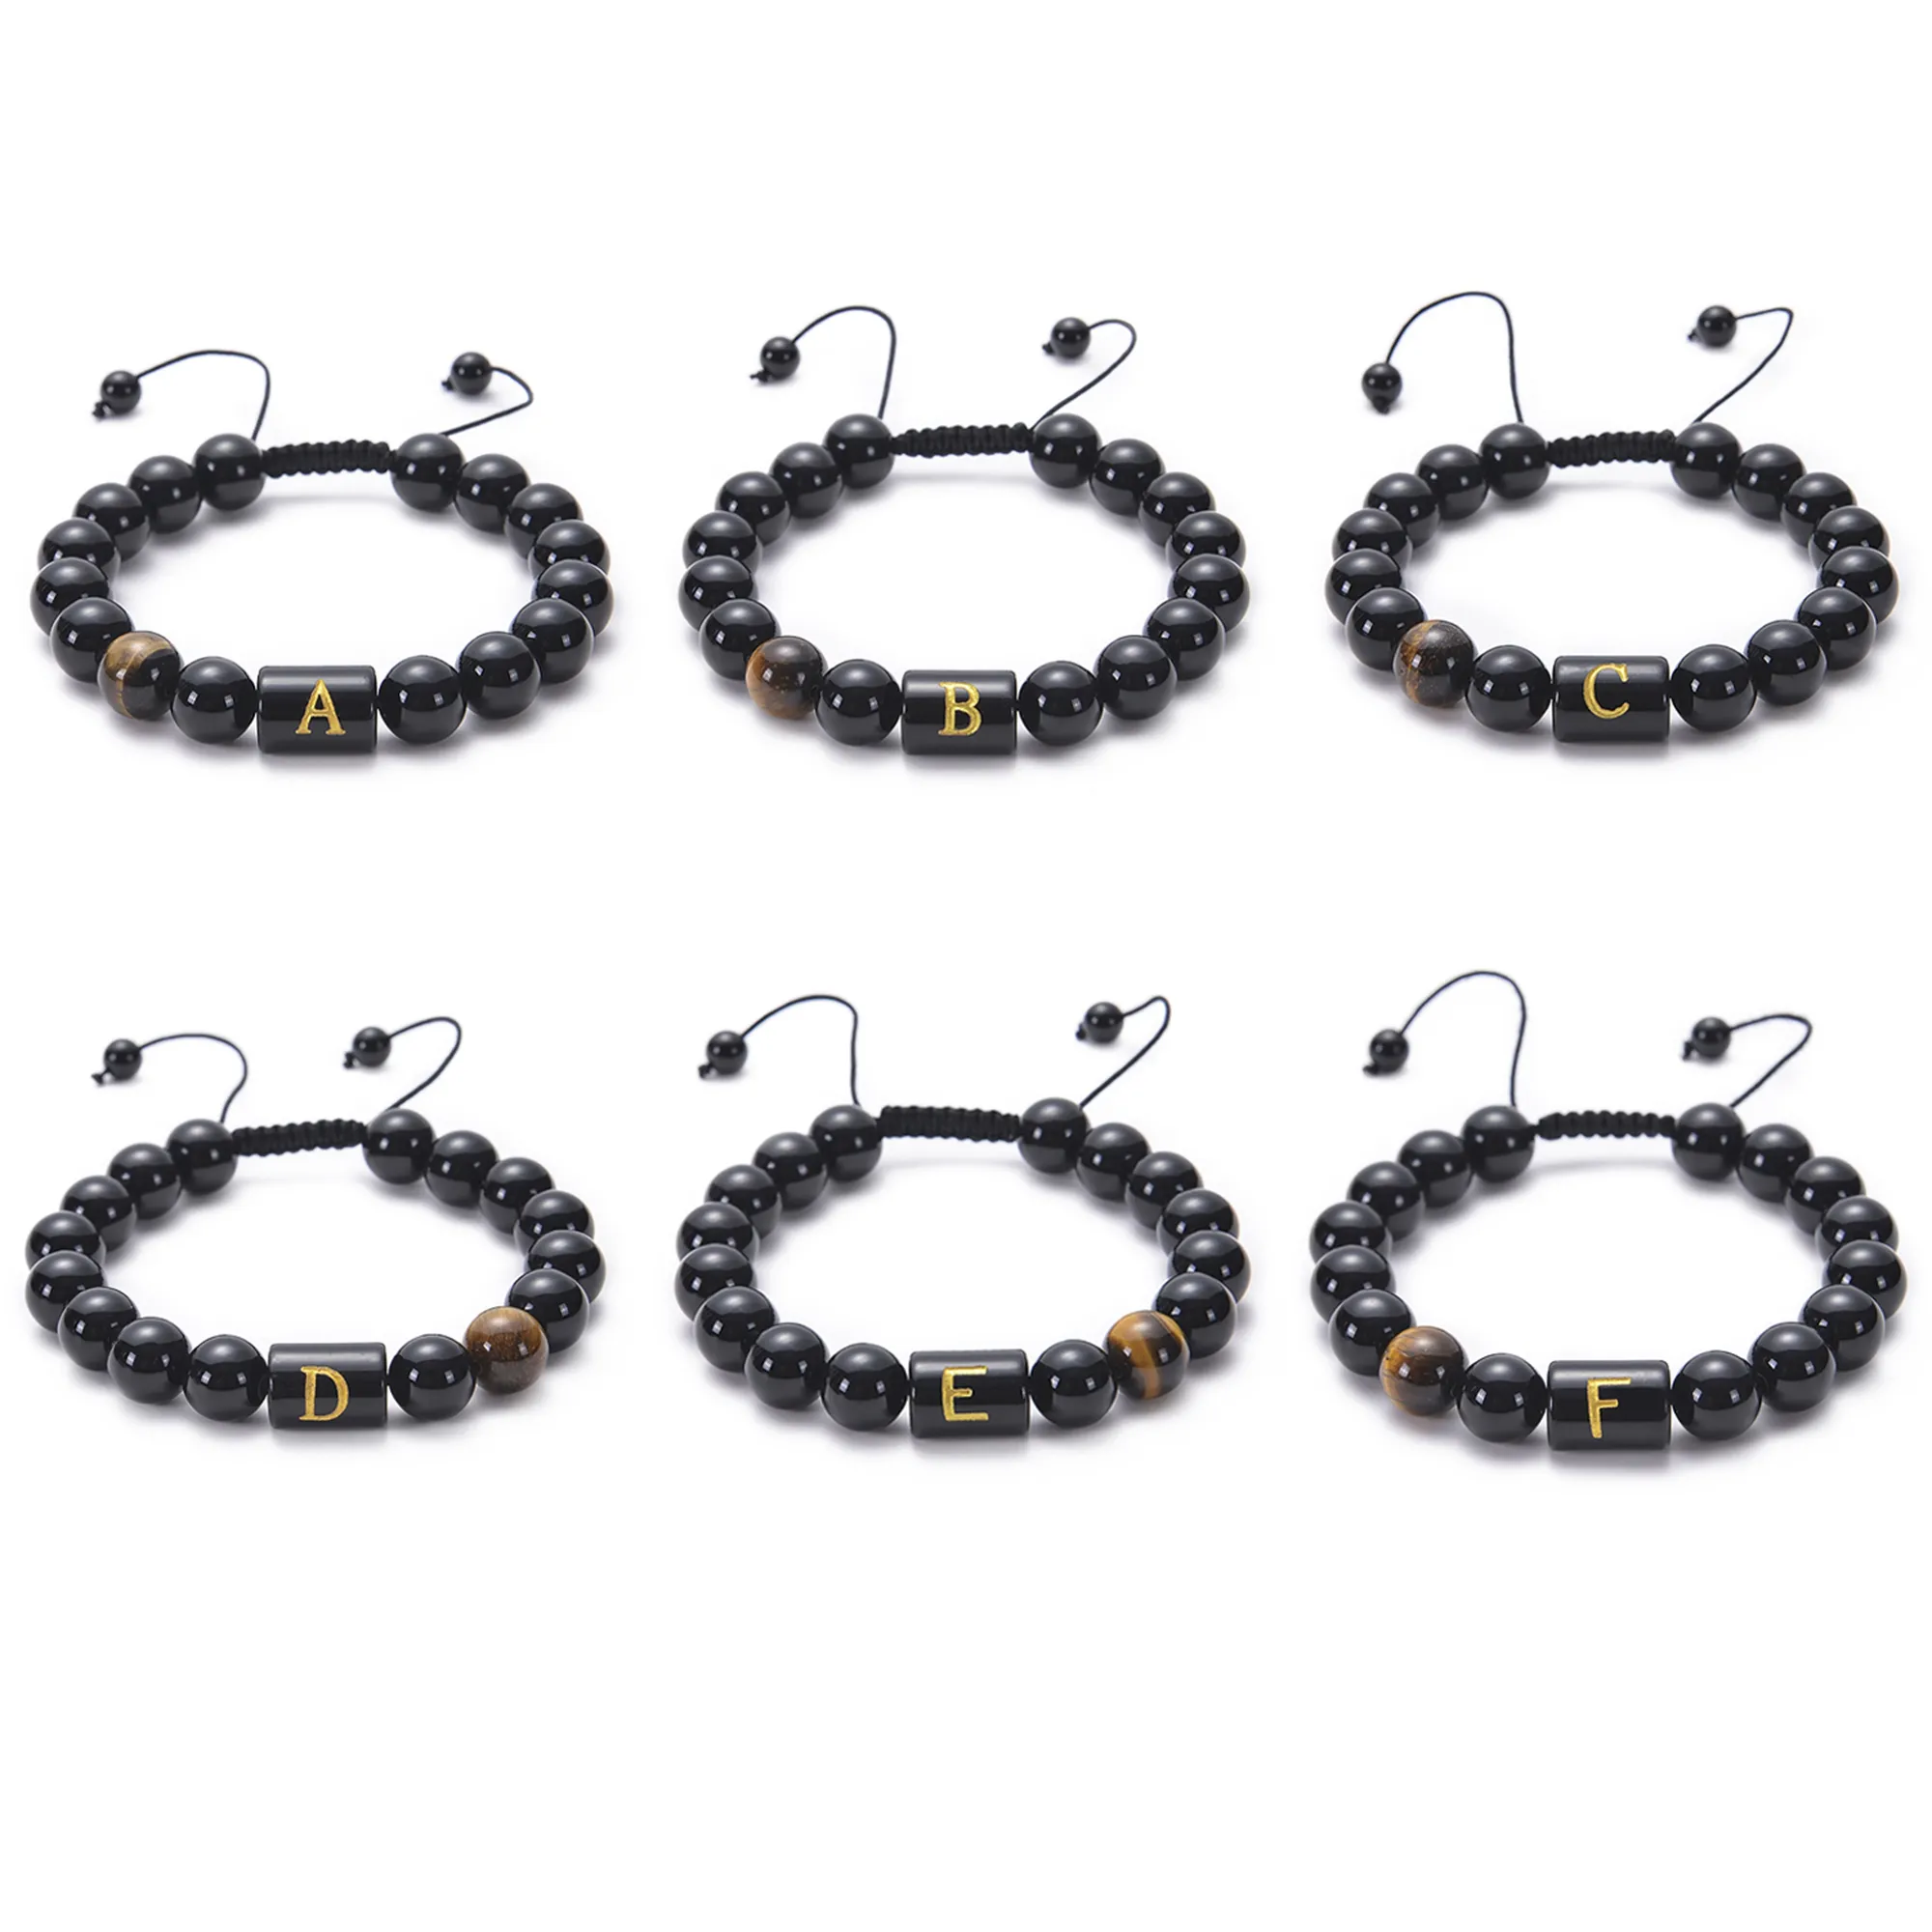 Initials Bracelets for Men 26 Letter Link Handmade Black Obsidian Tiger Eye Stone Beads Braided Rope Meaningful Bracelet